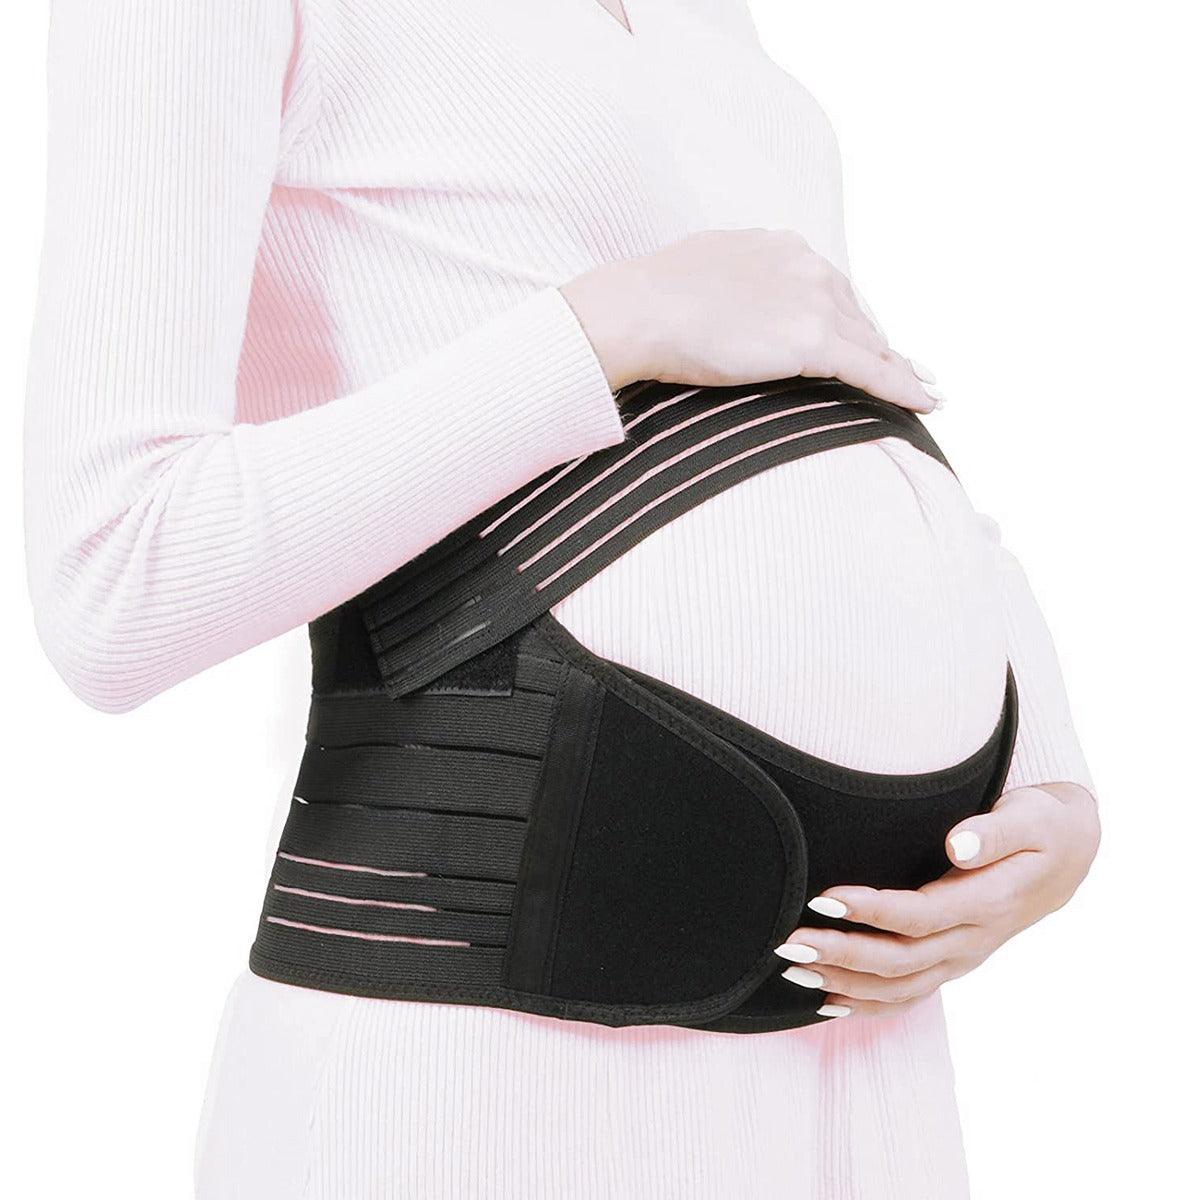 Cinturón de maternidad WINAH™ para mujeres embarazadas